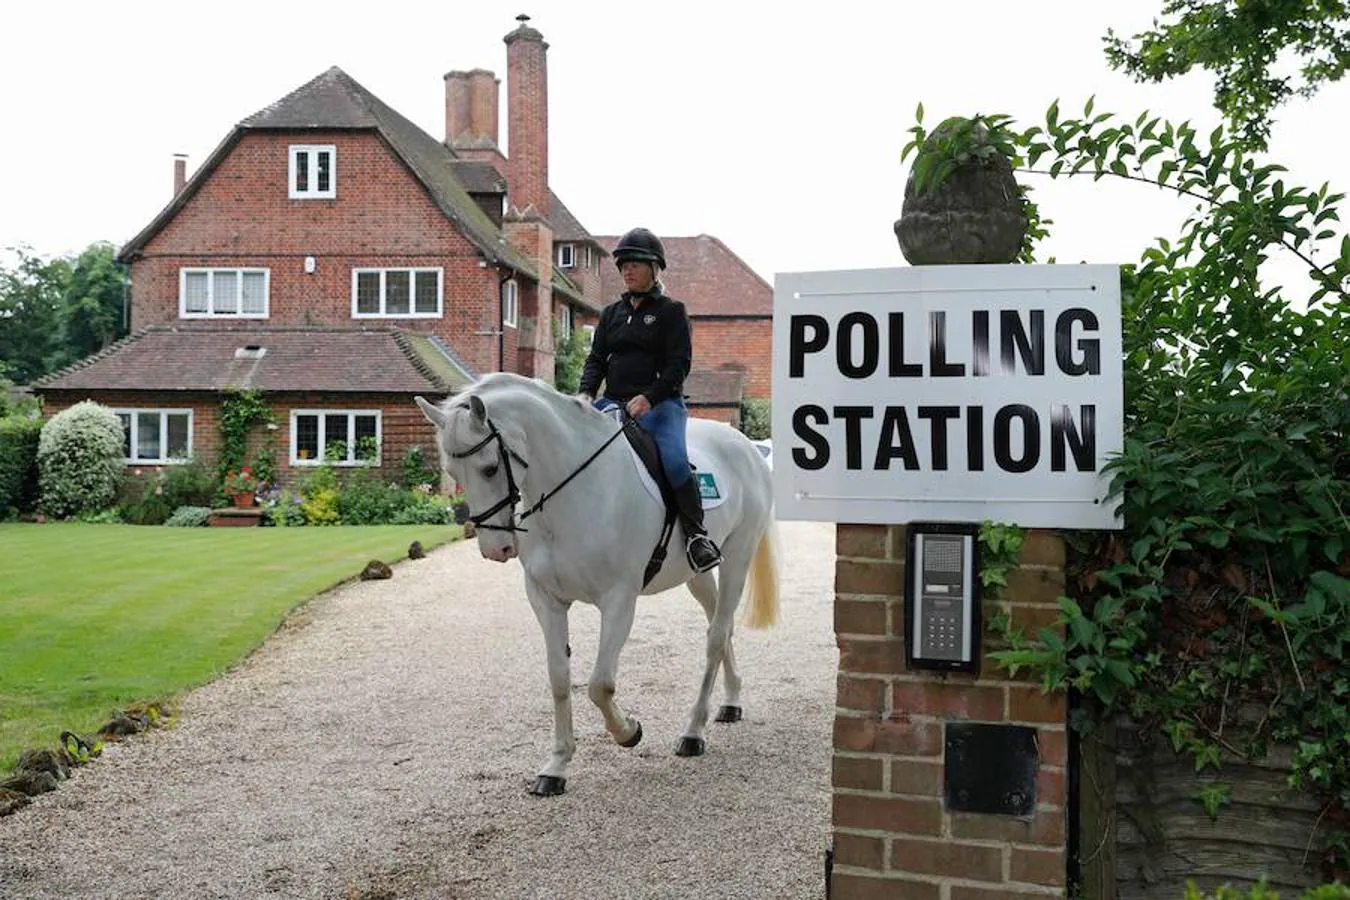 Mesa de votación en una residencia privada. Sophie Allison, montada en su caballo Splash, sale de la entrada de una residencia privada, establecida como una sala de votación, cerca de Reading, al oeste de Londres.